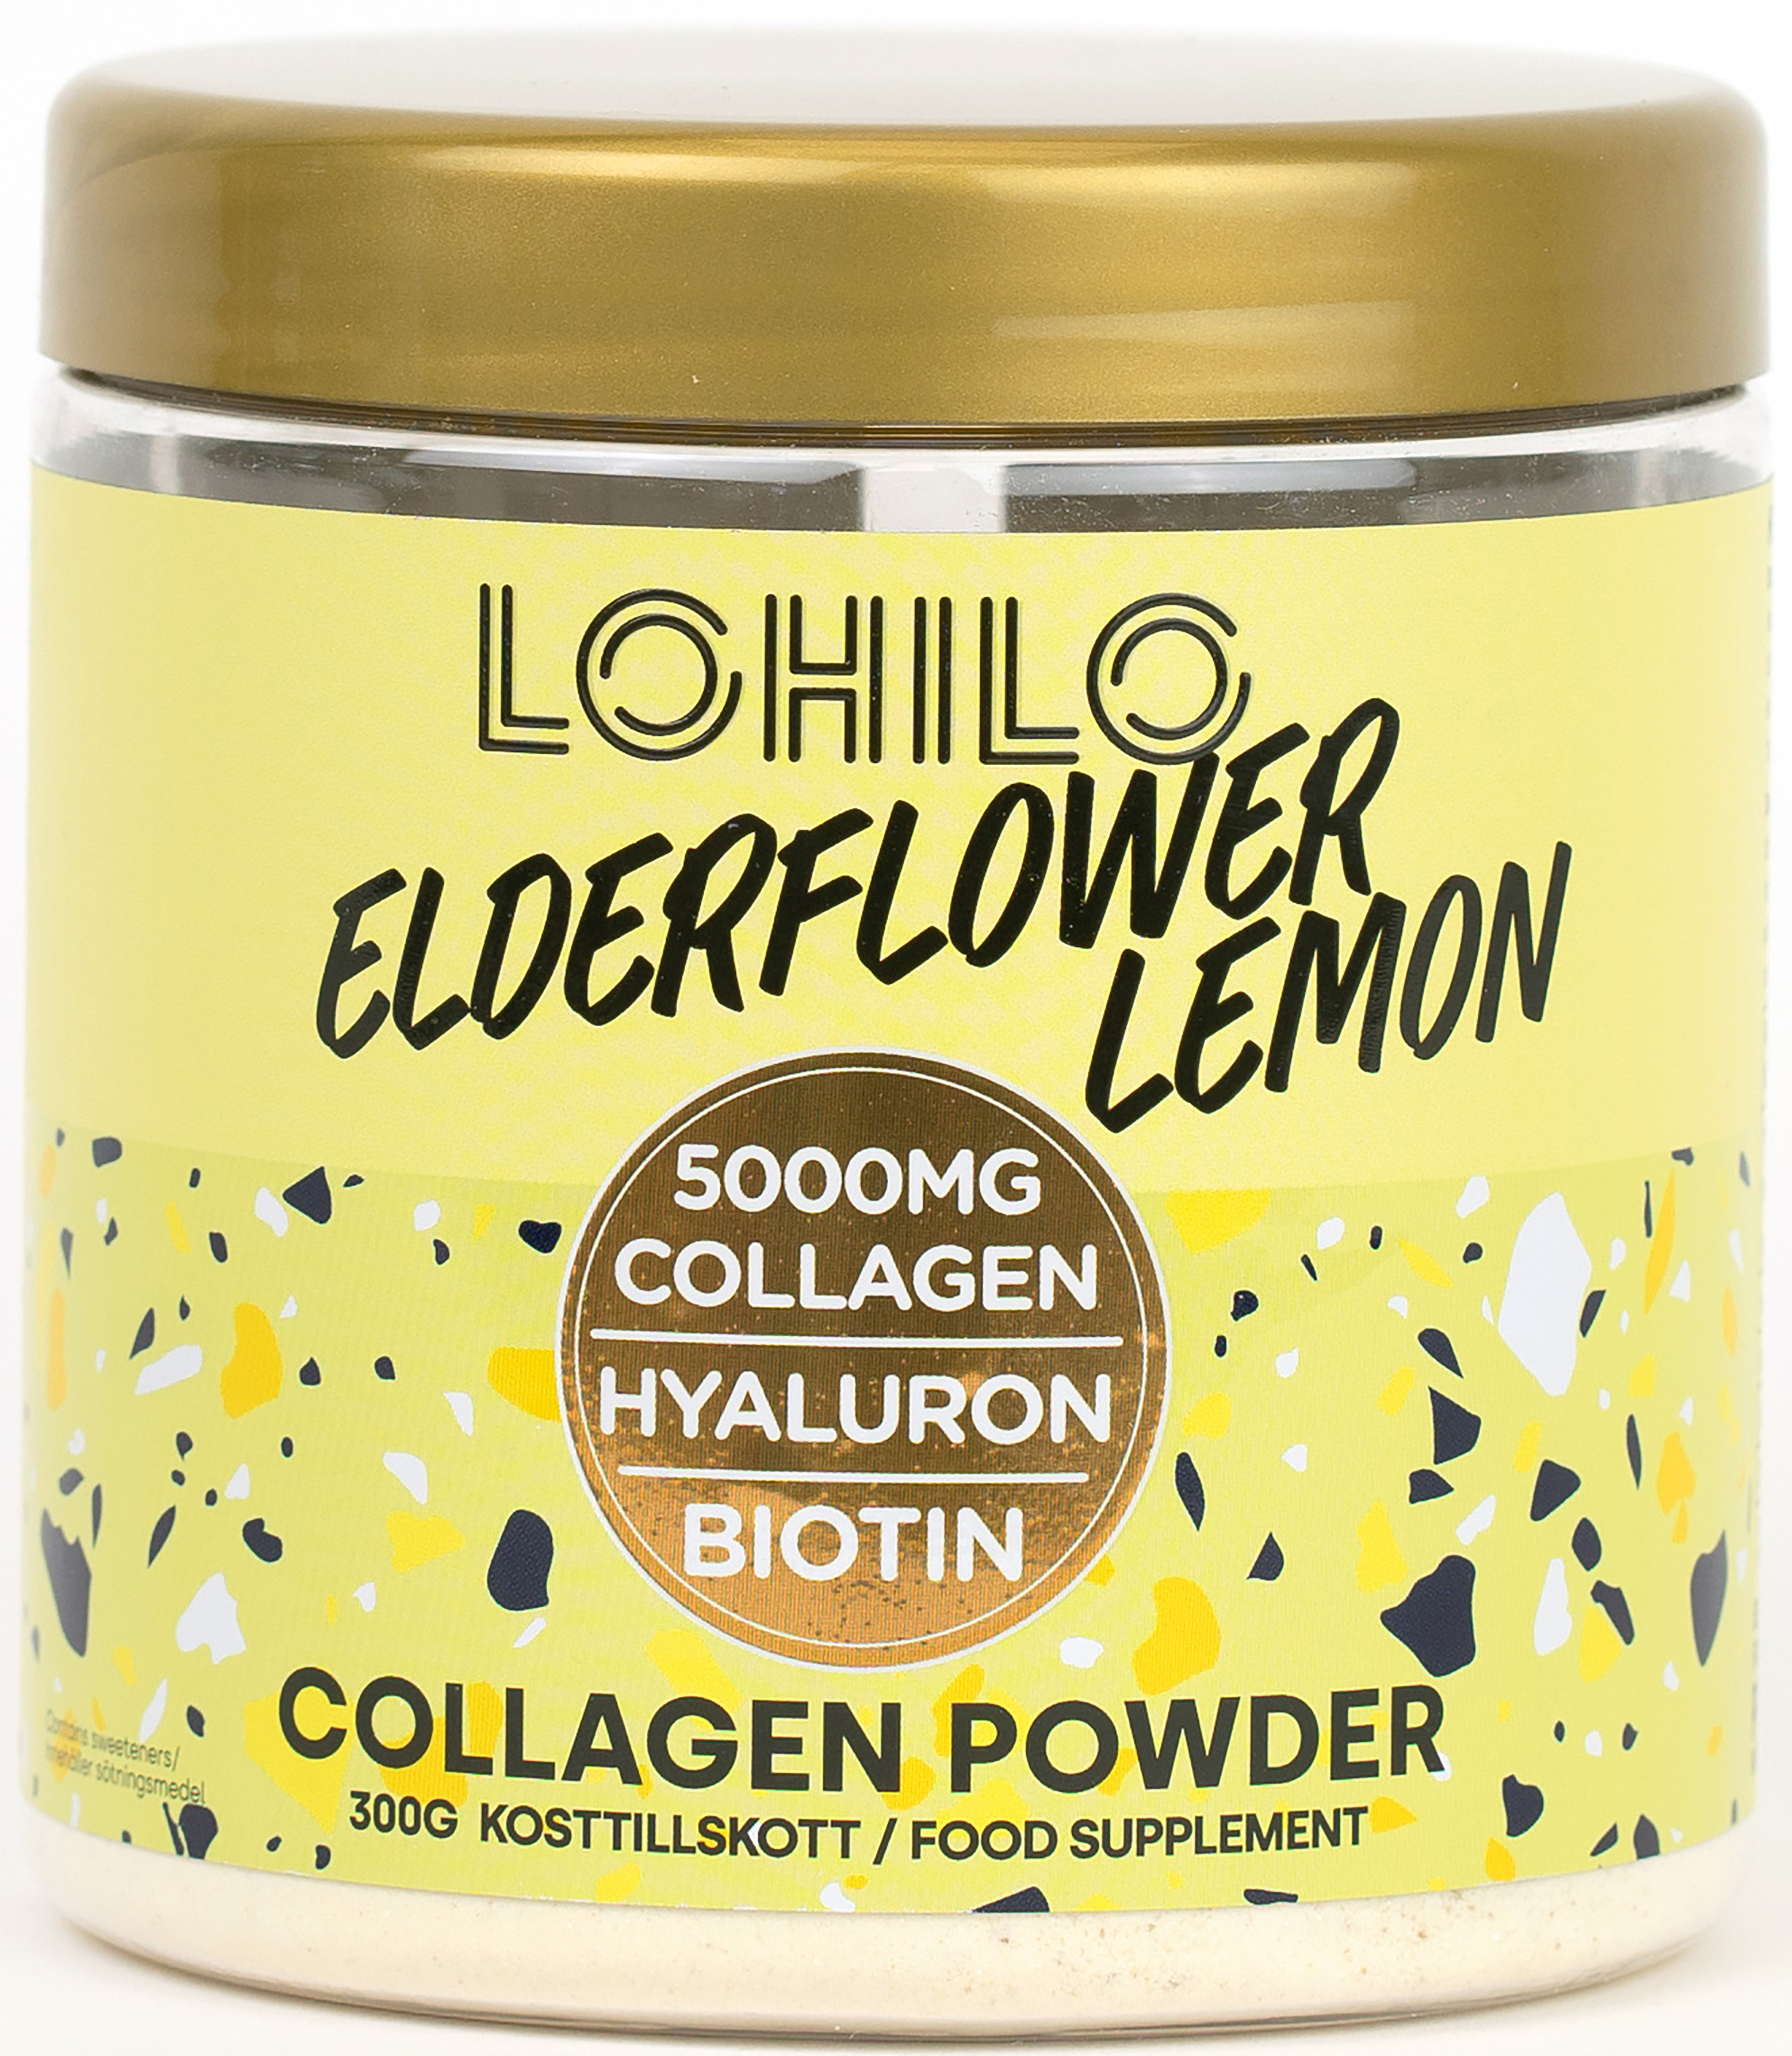 Lohilo Collagen Elderflower Lemon 300 g